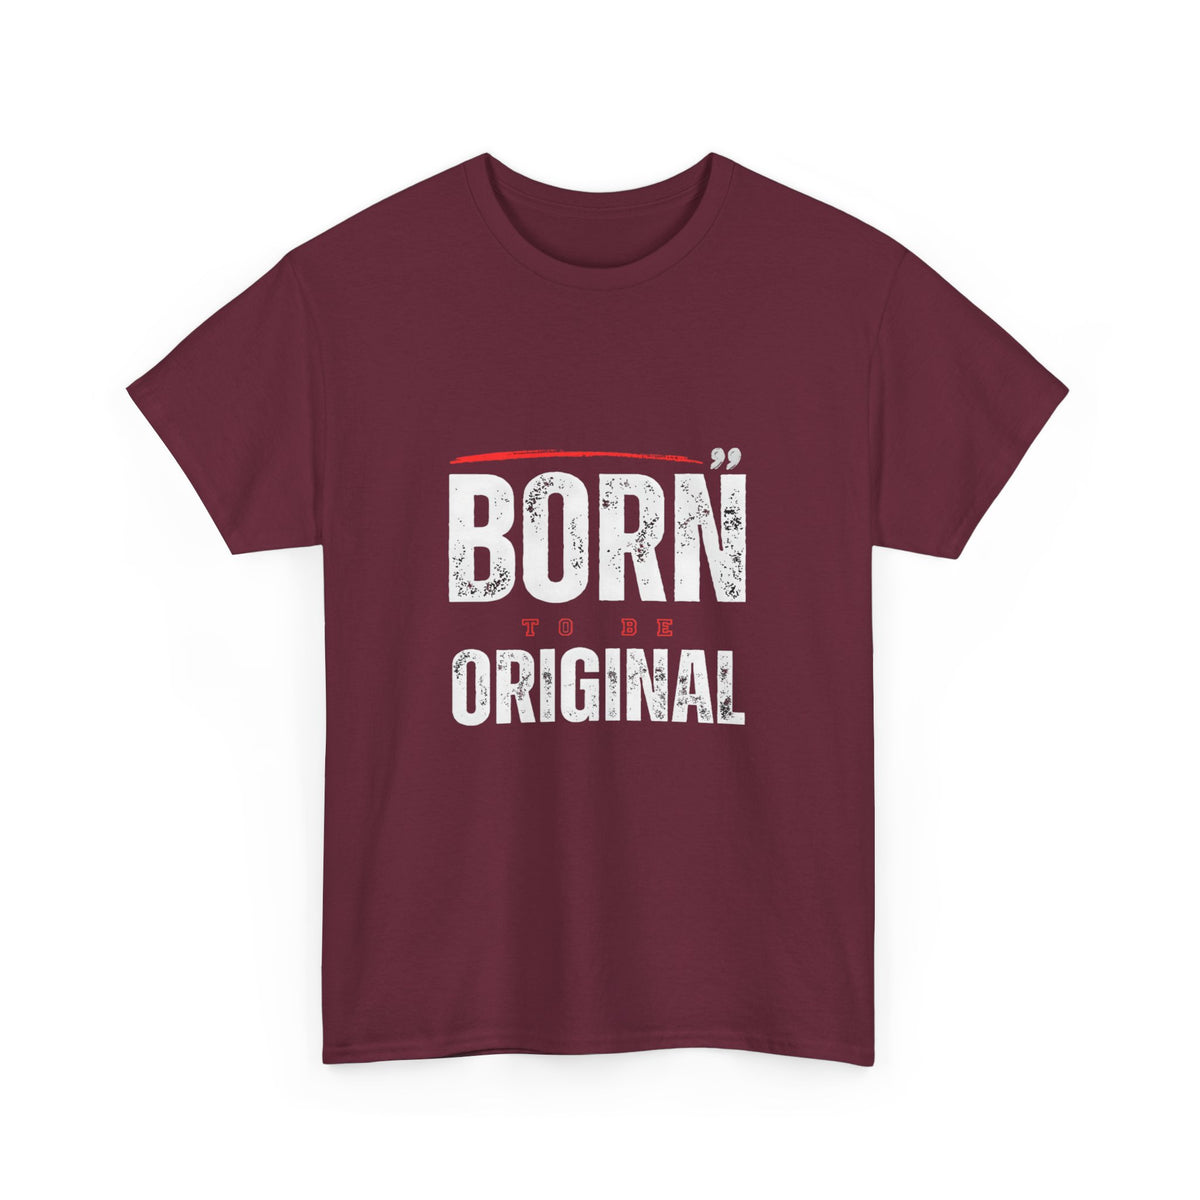 Born Original 1977